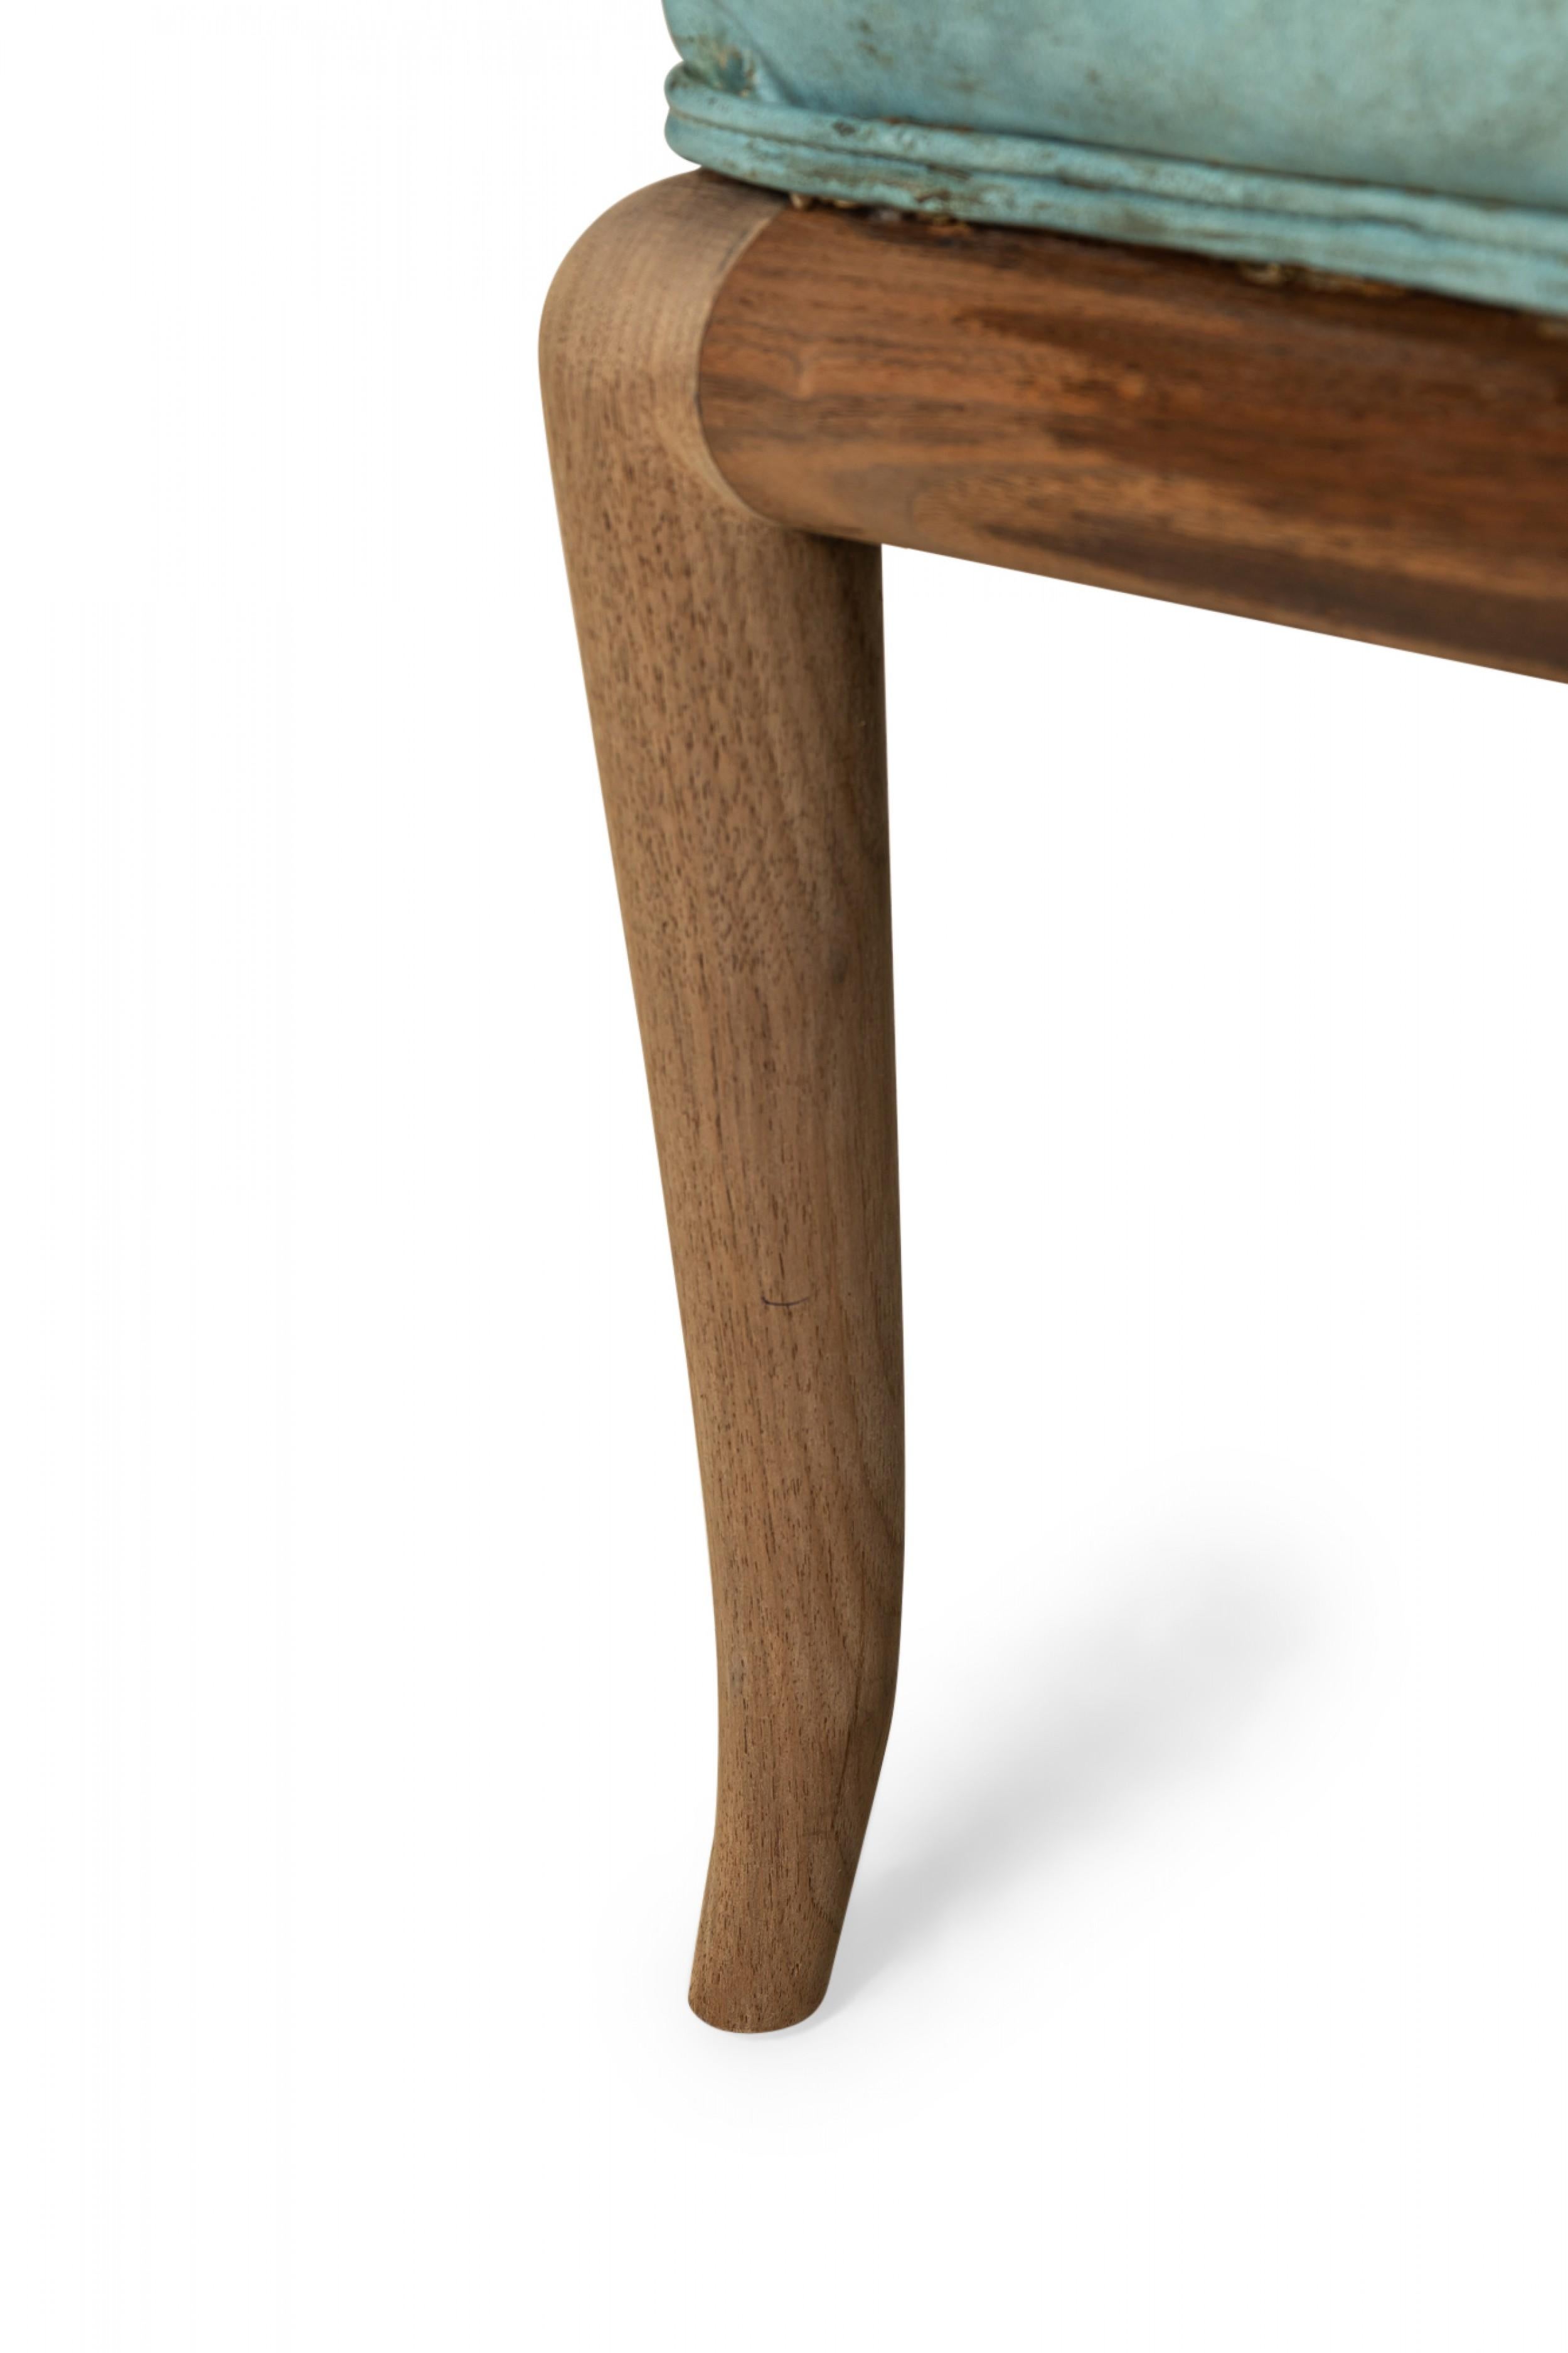 T.H. Robsjohn-Gibbings for Widdicomb Furniture Co. Blue Leather Slipper Chair For Sale 3